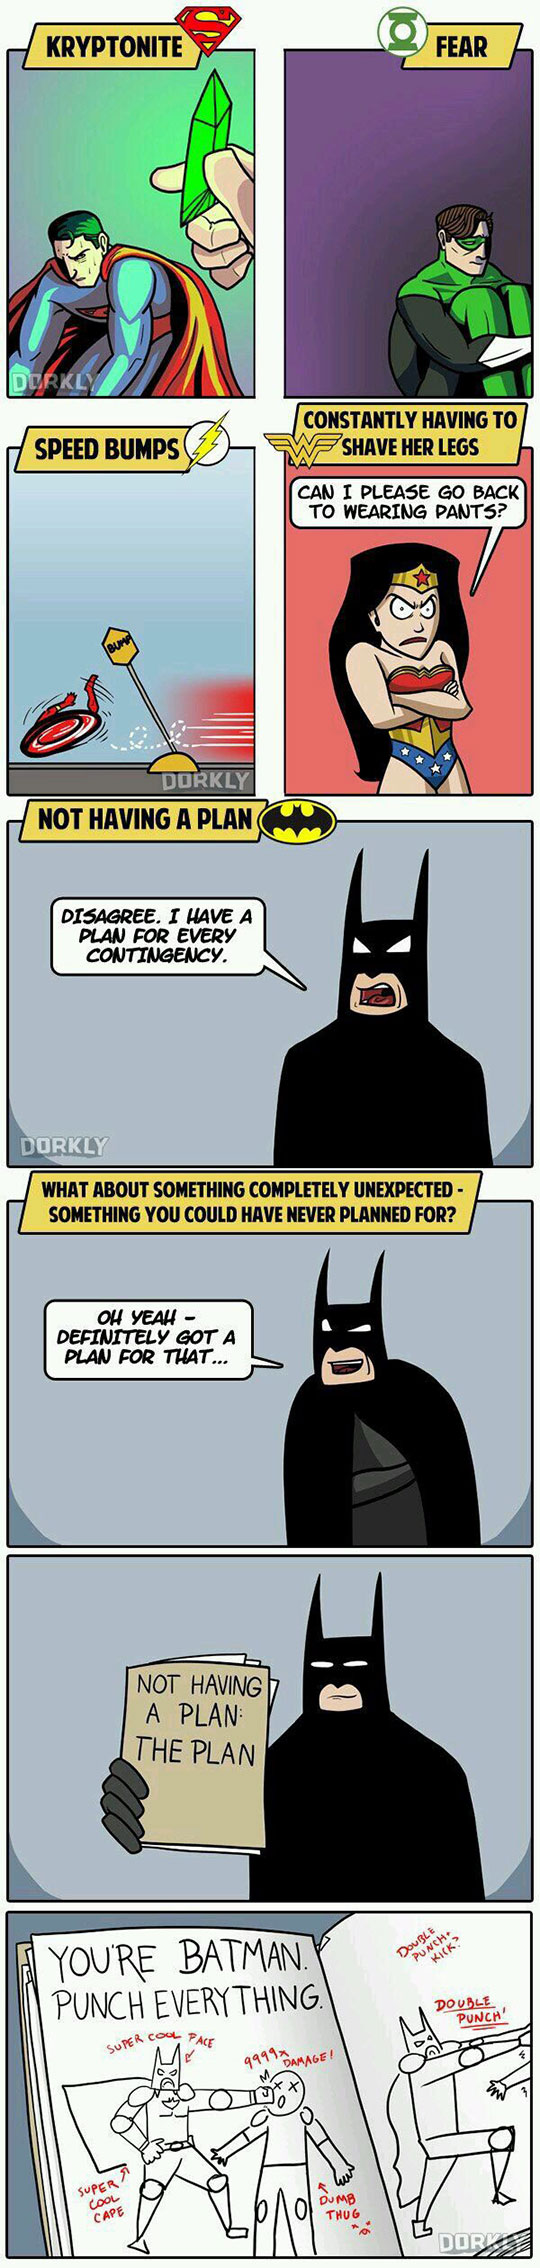 Batman always has a plan.